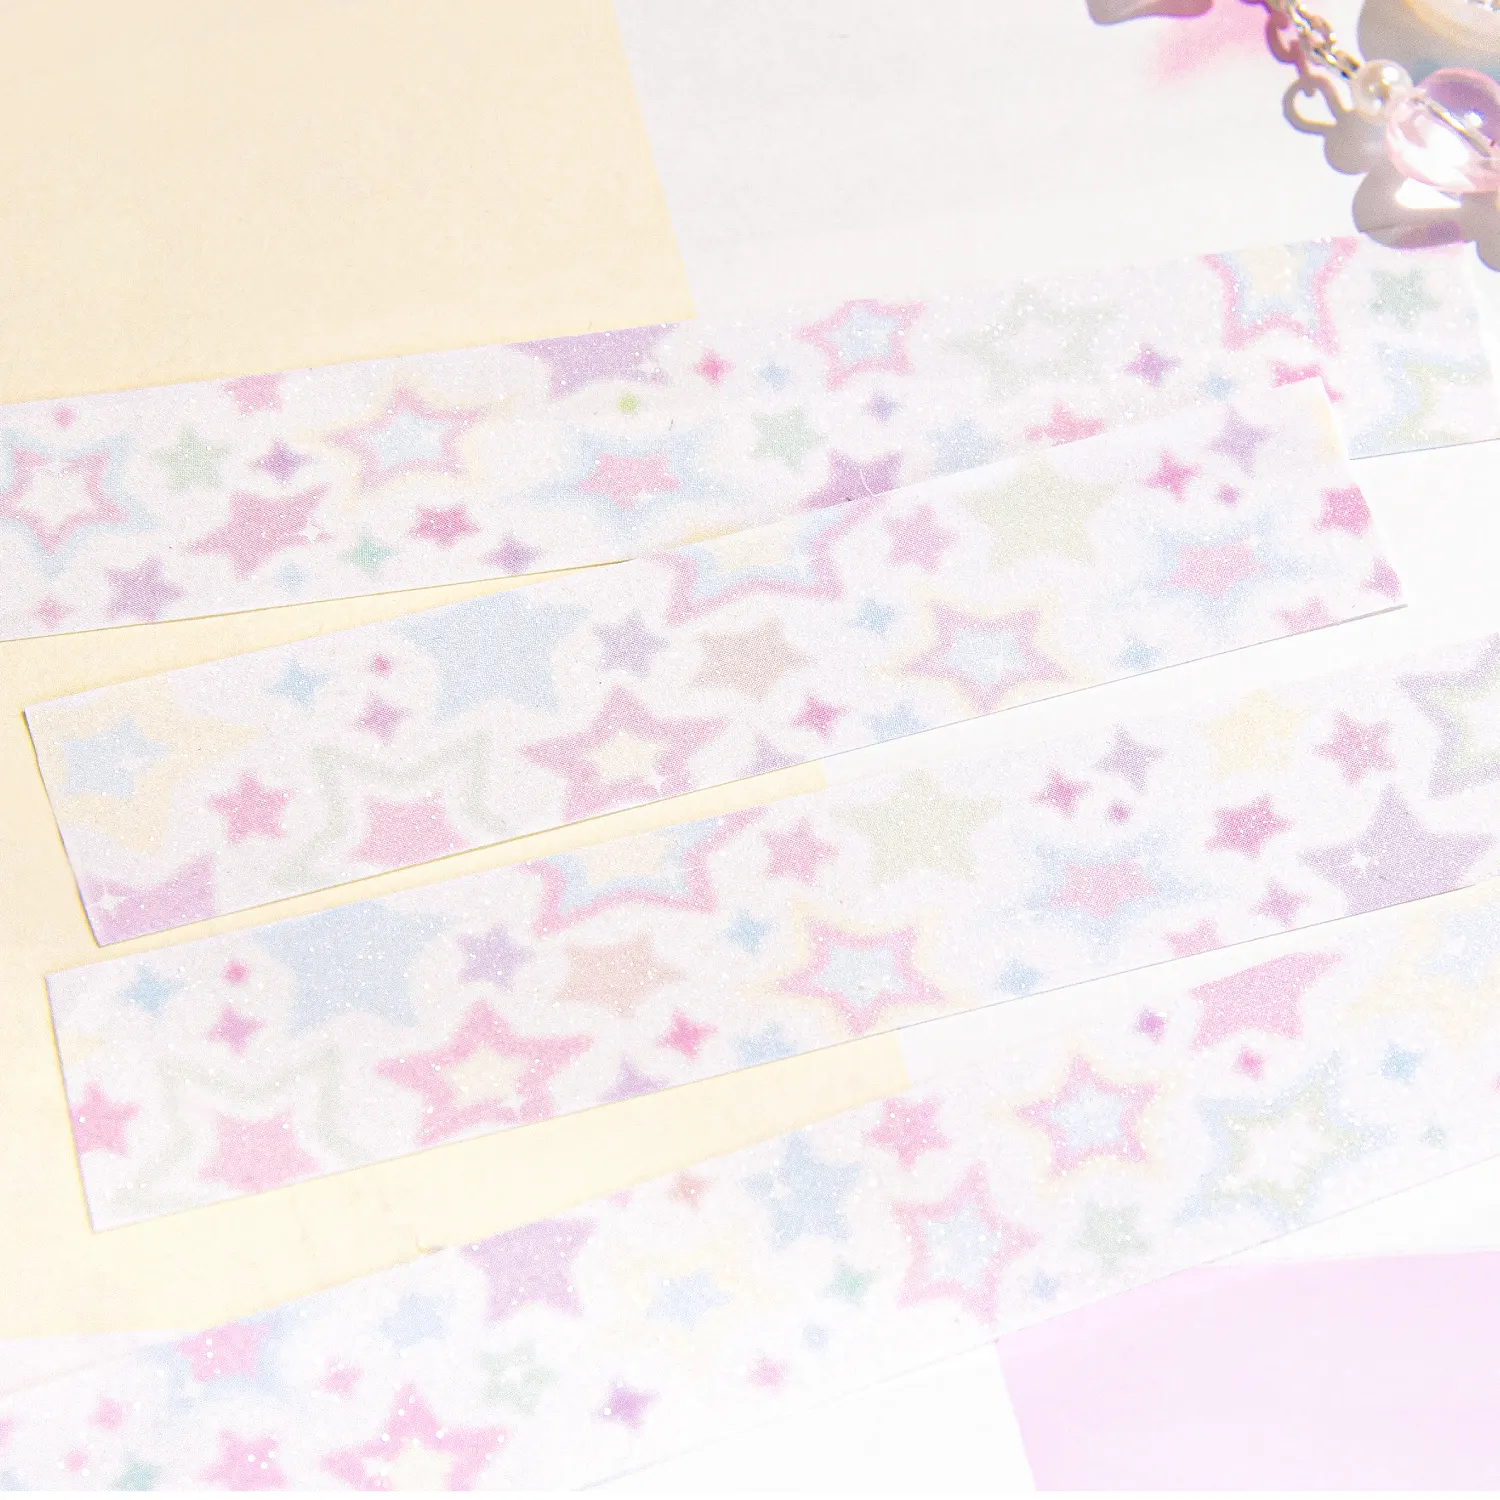 15mm Sparkling Washi Tape Set Star Skinny Gold Foil Decorative Masking Washi Tapes for Journal Scrapbook Planner DIY Crafts